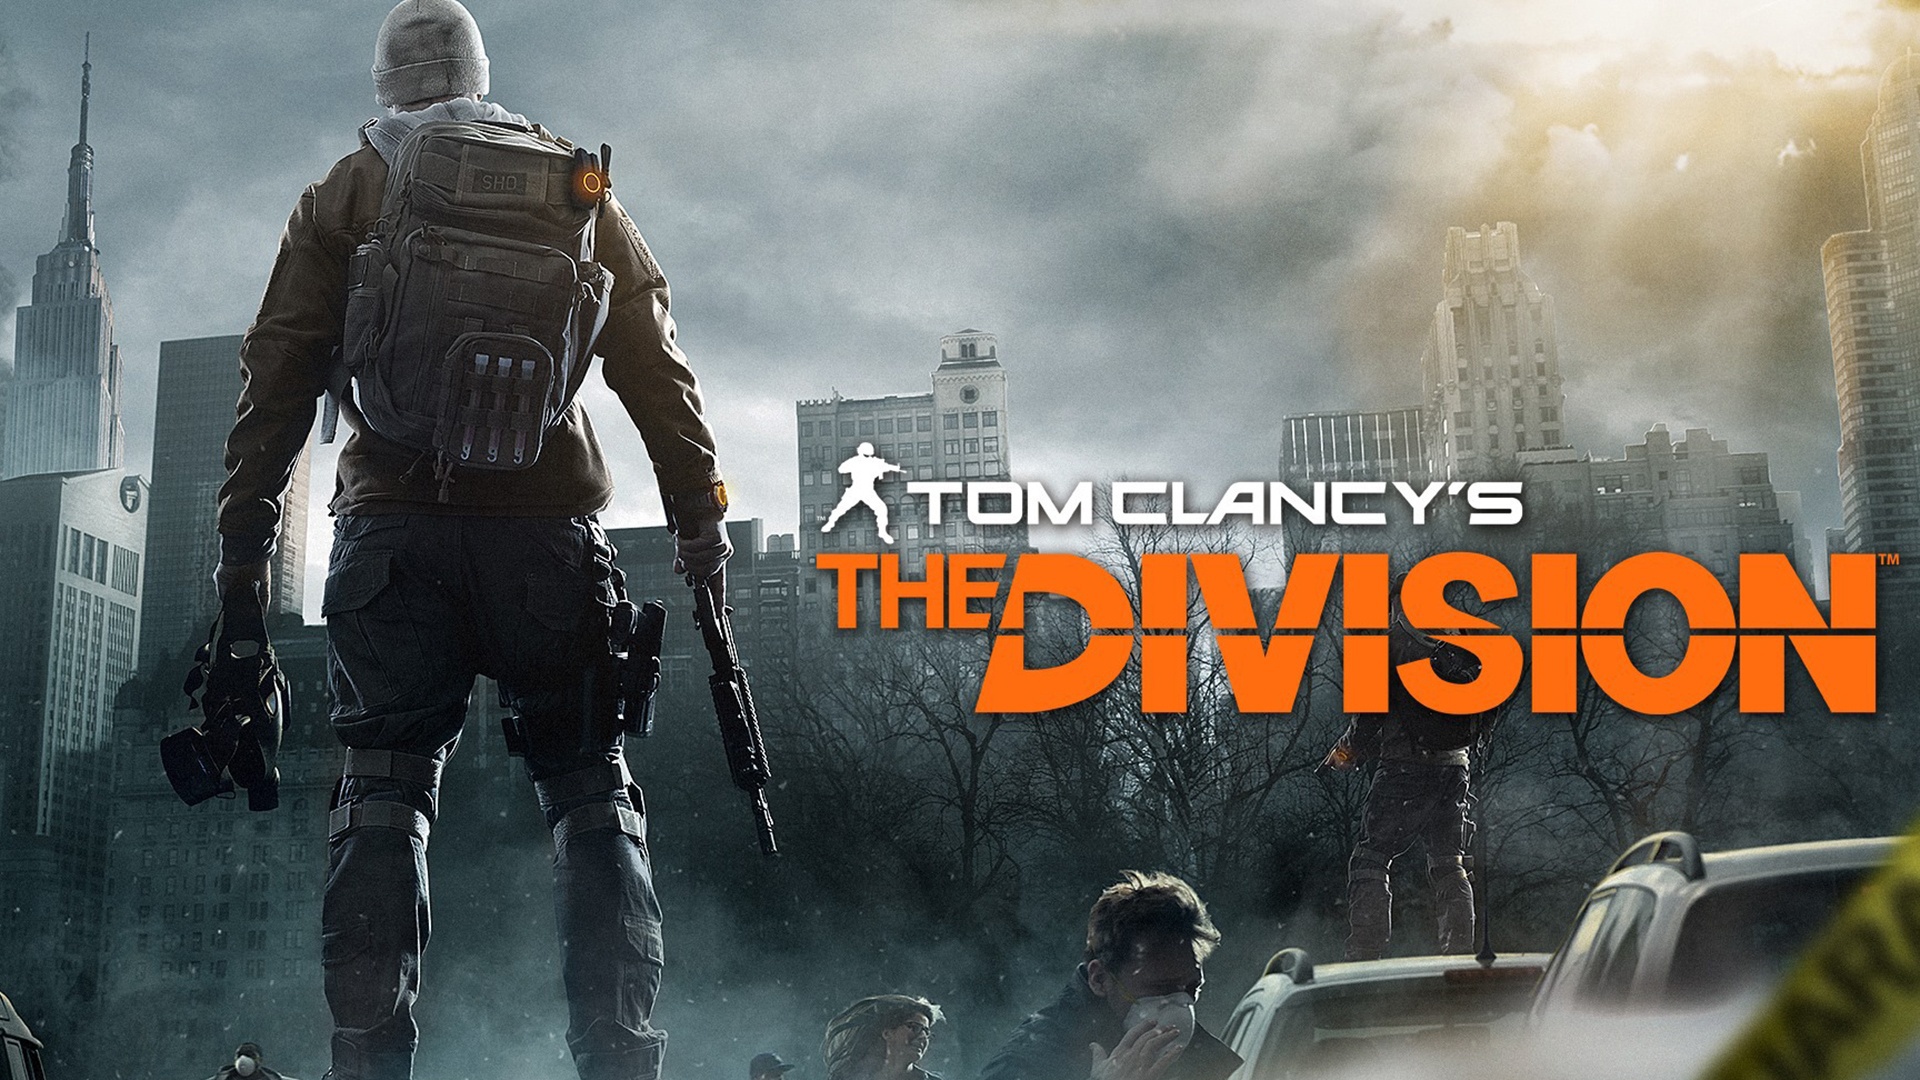 Logitech kooperiert mit Ubisoft zu Tom Clancy’s The Division